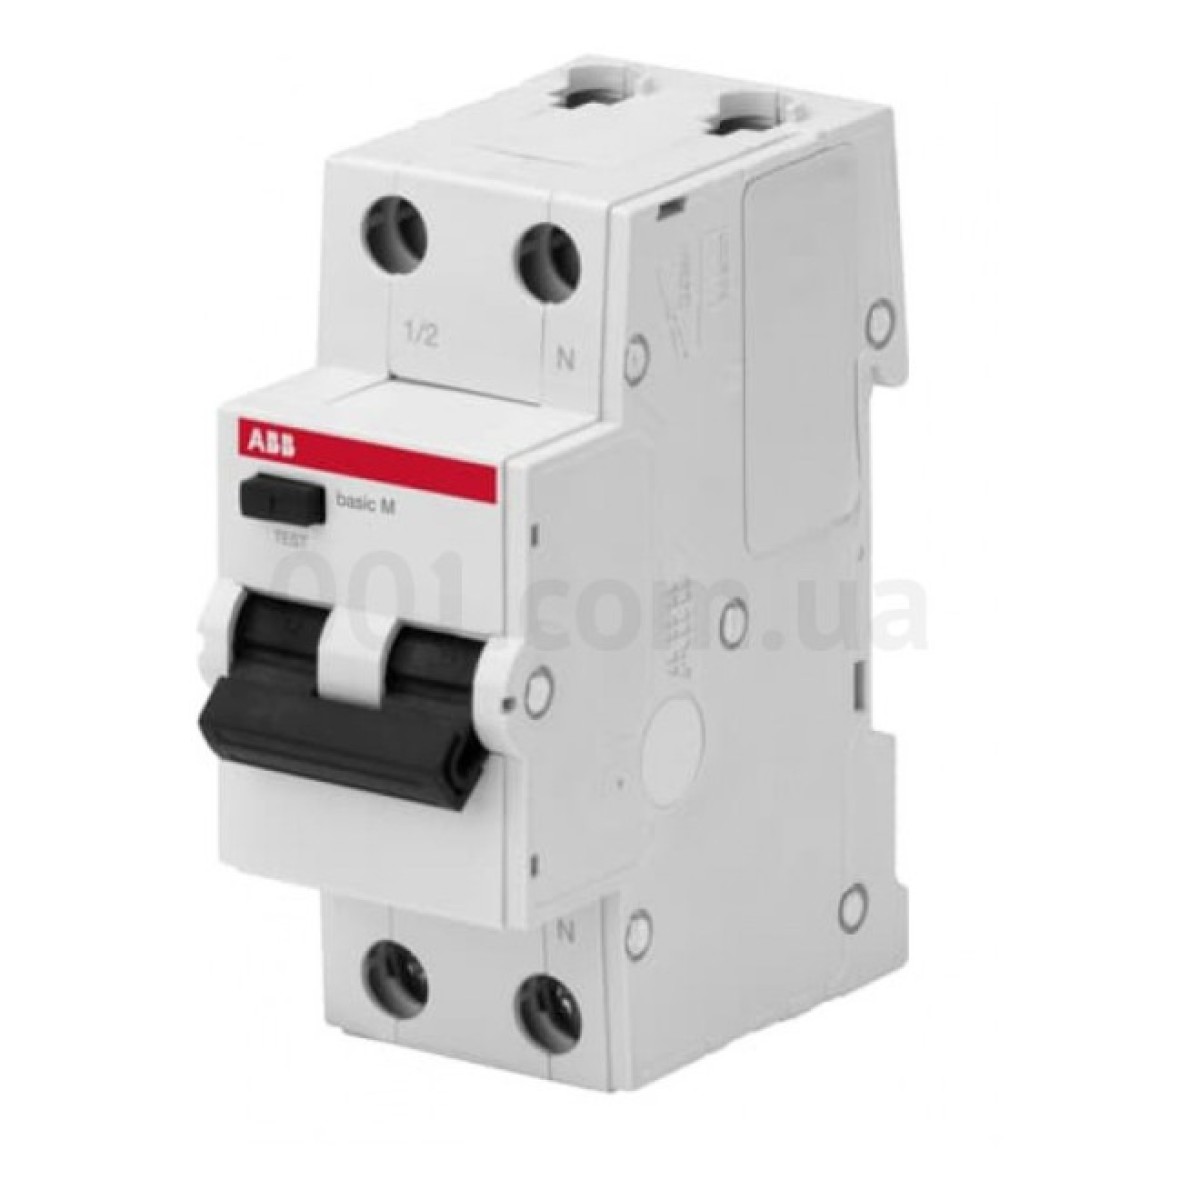 Автоматичний вимикач диференційного струму BMR415C10 1P+N/10А/30мА тип AC BASIC M, ABB 98_98.jpg - фото 1